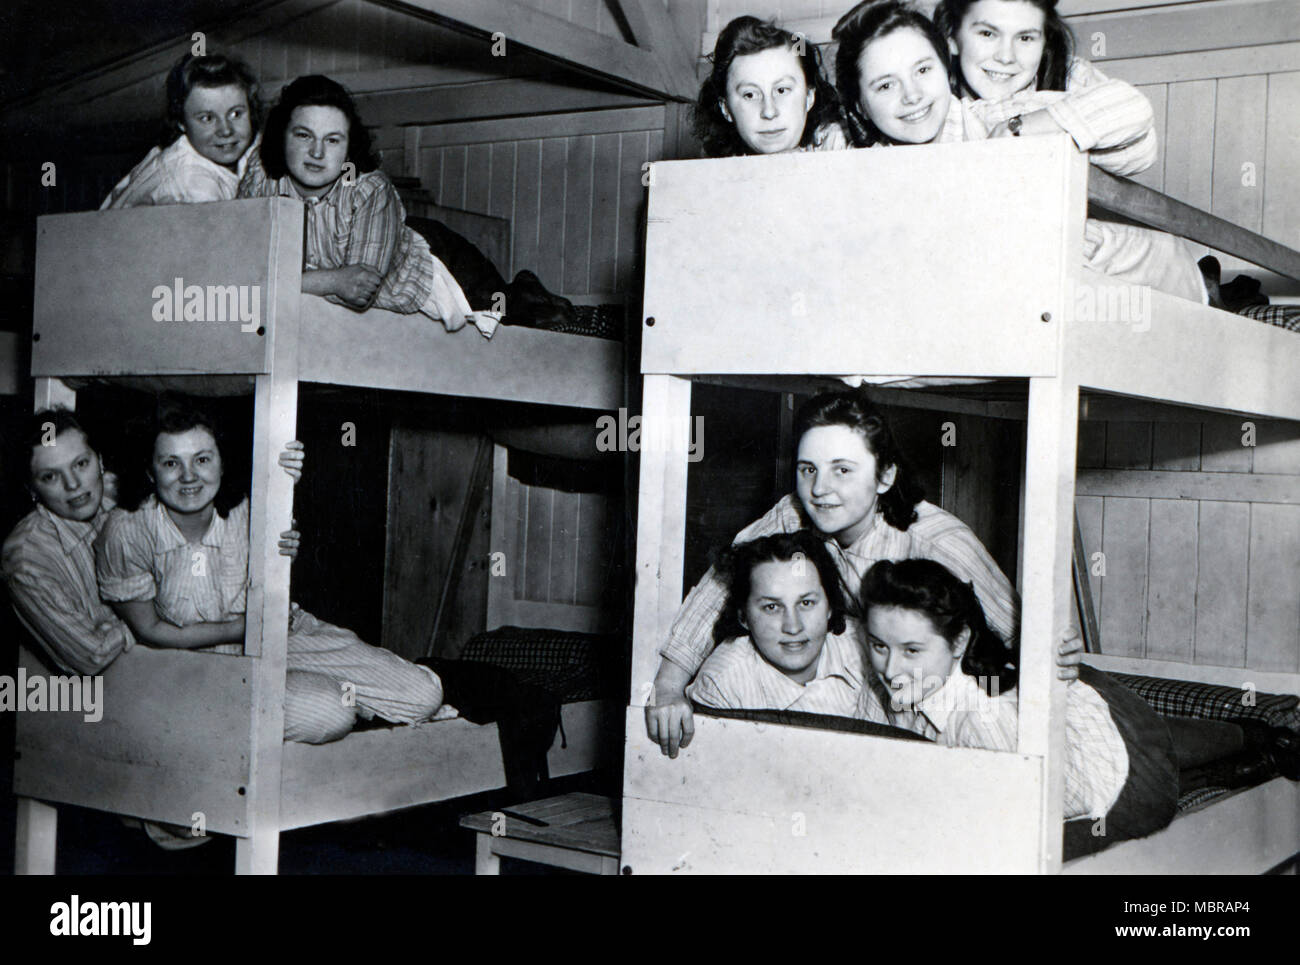 Bund deutscher Mädel (BDM), part of the Hitler Youth for Girls, bedroom, 1940s, Germany Stock Photo